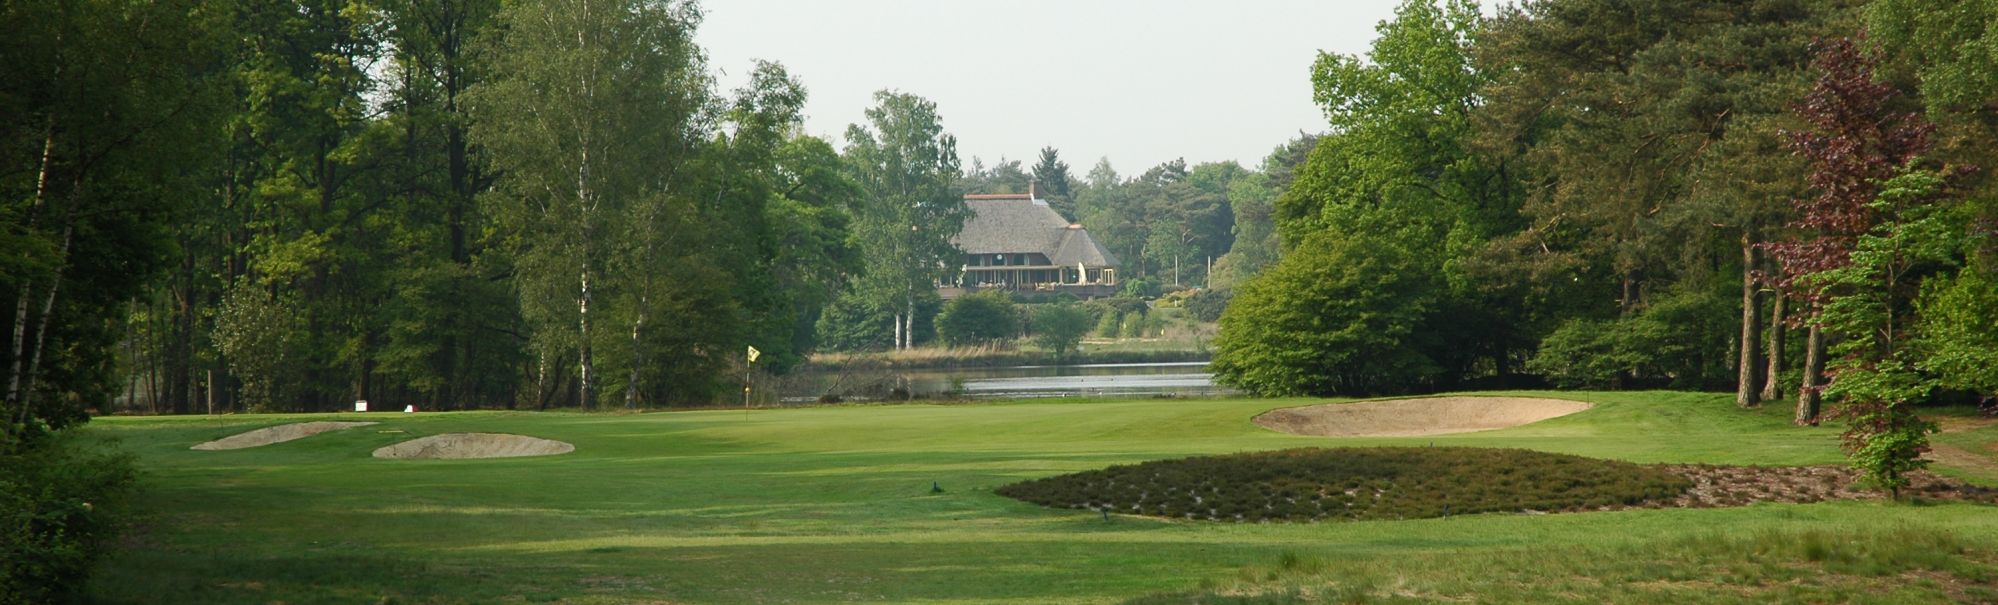 Eindhovensche Golf golfbaan